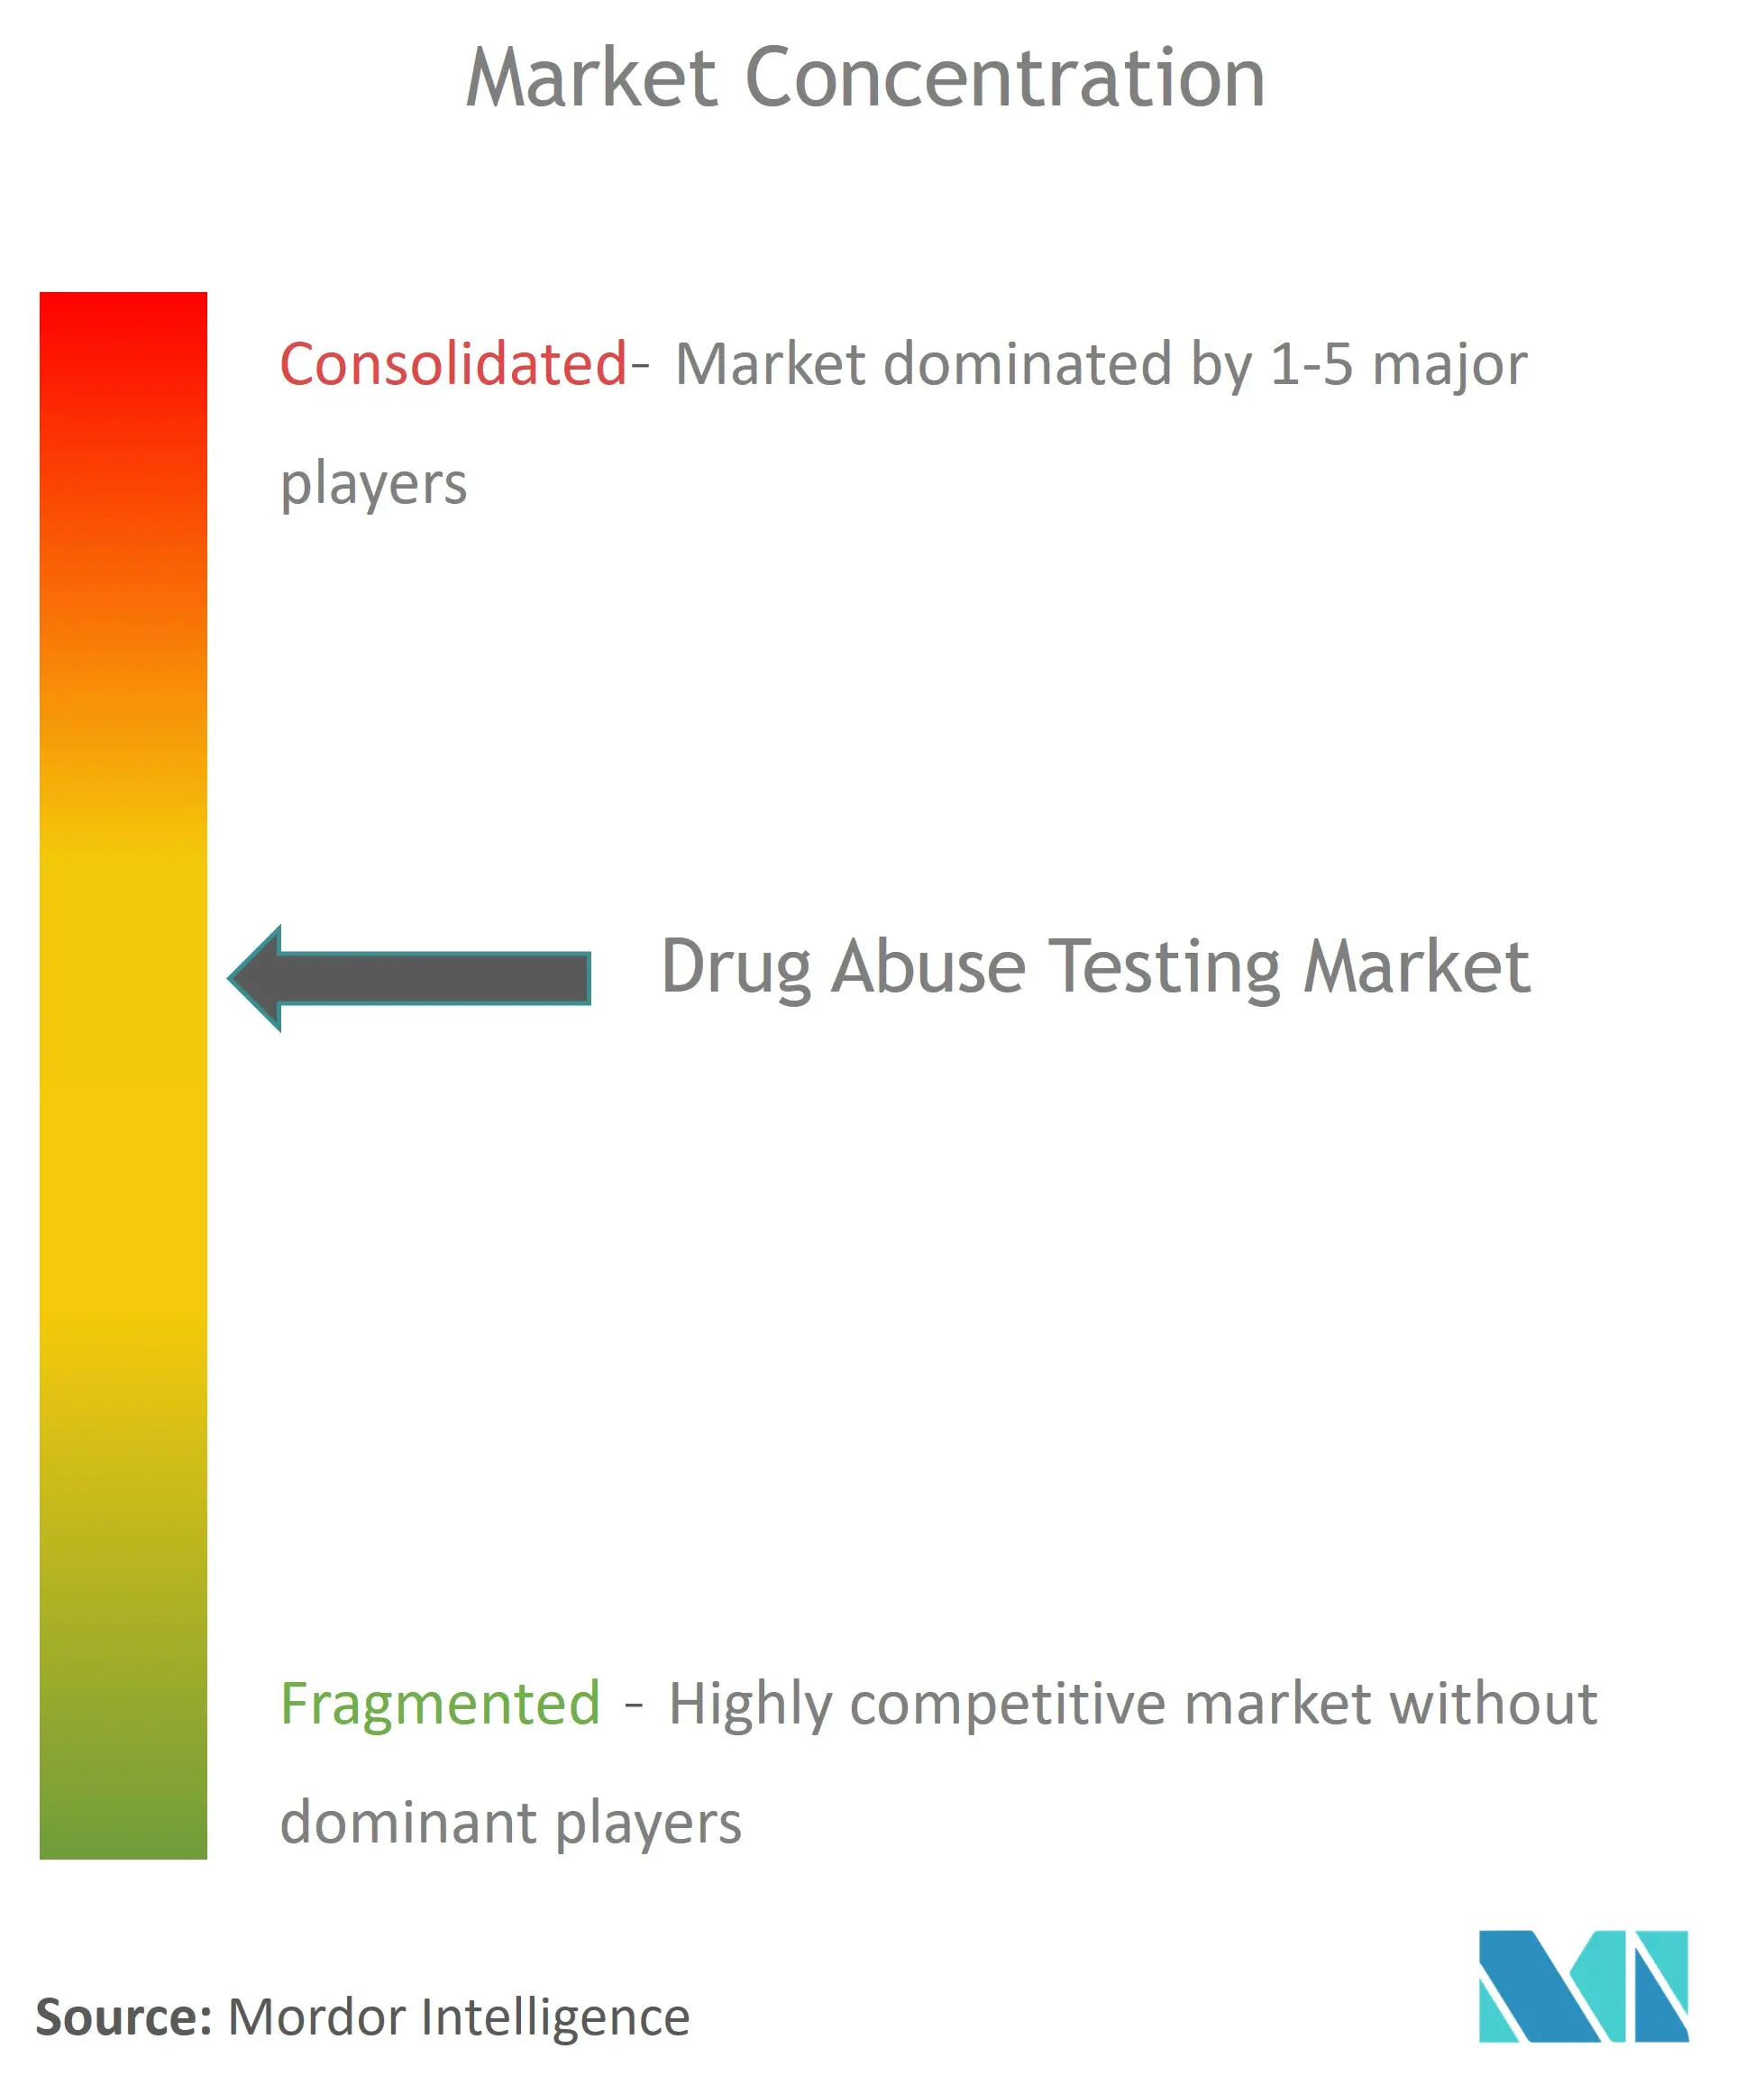 Drug Abuse Testing Market Concentration